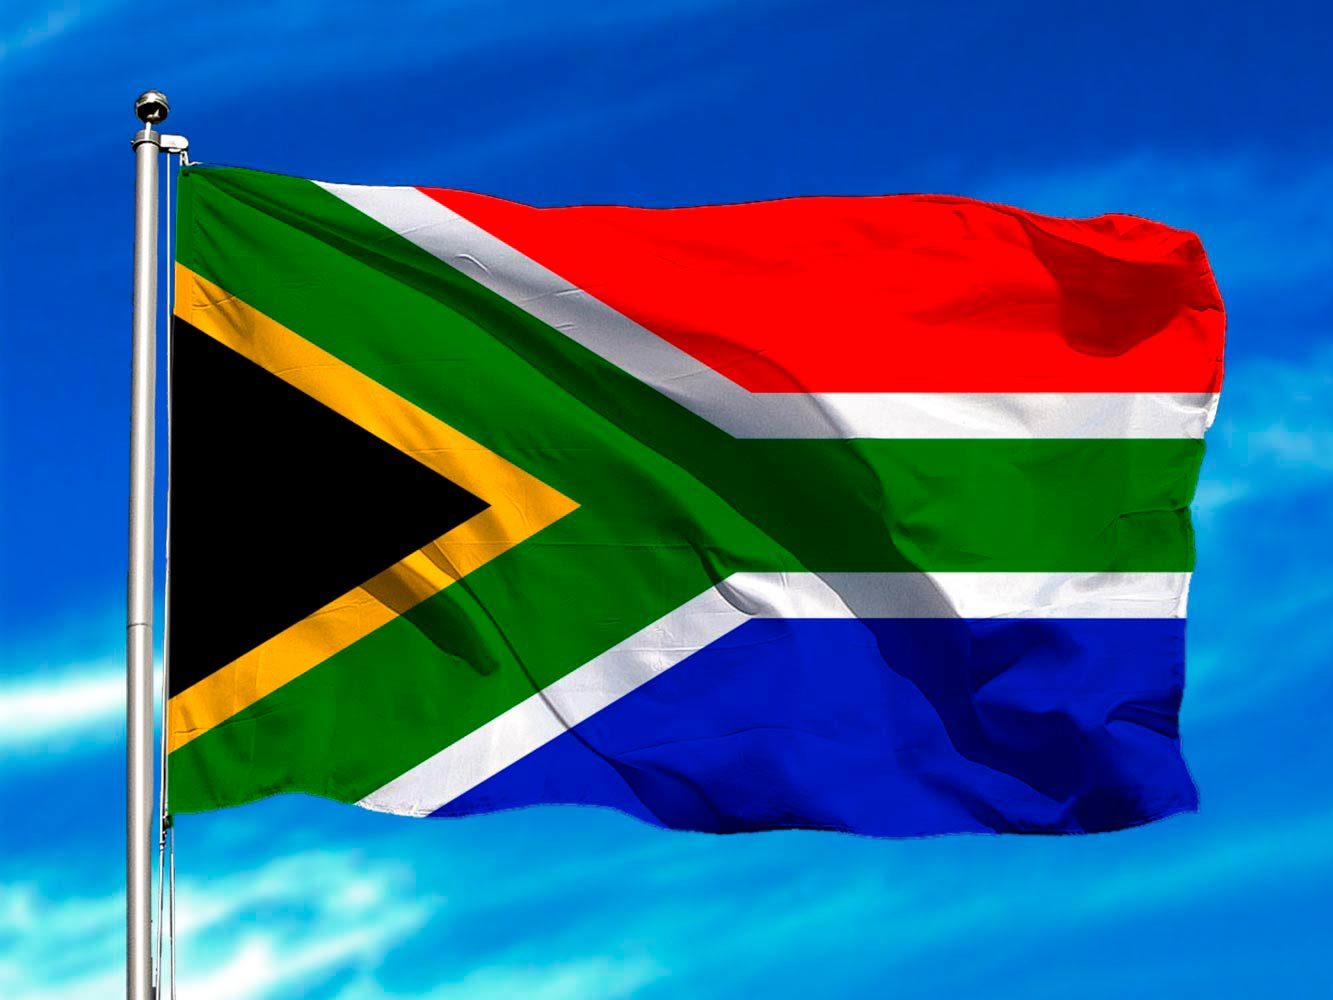 Sudáfrica encabeza a países africanos más afectados por pandemia